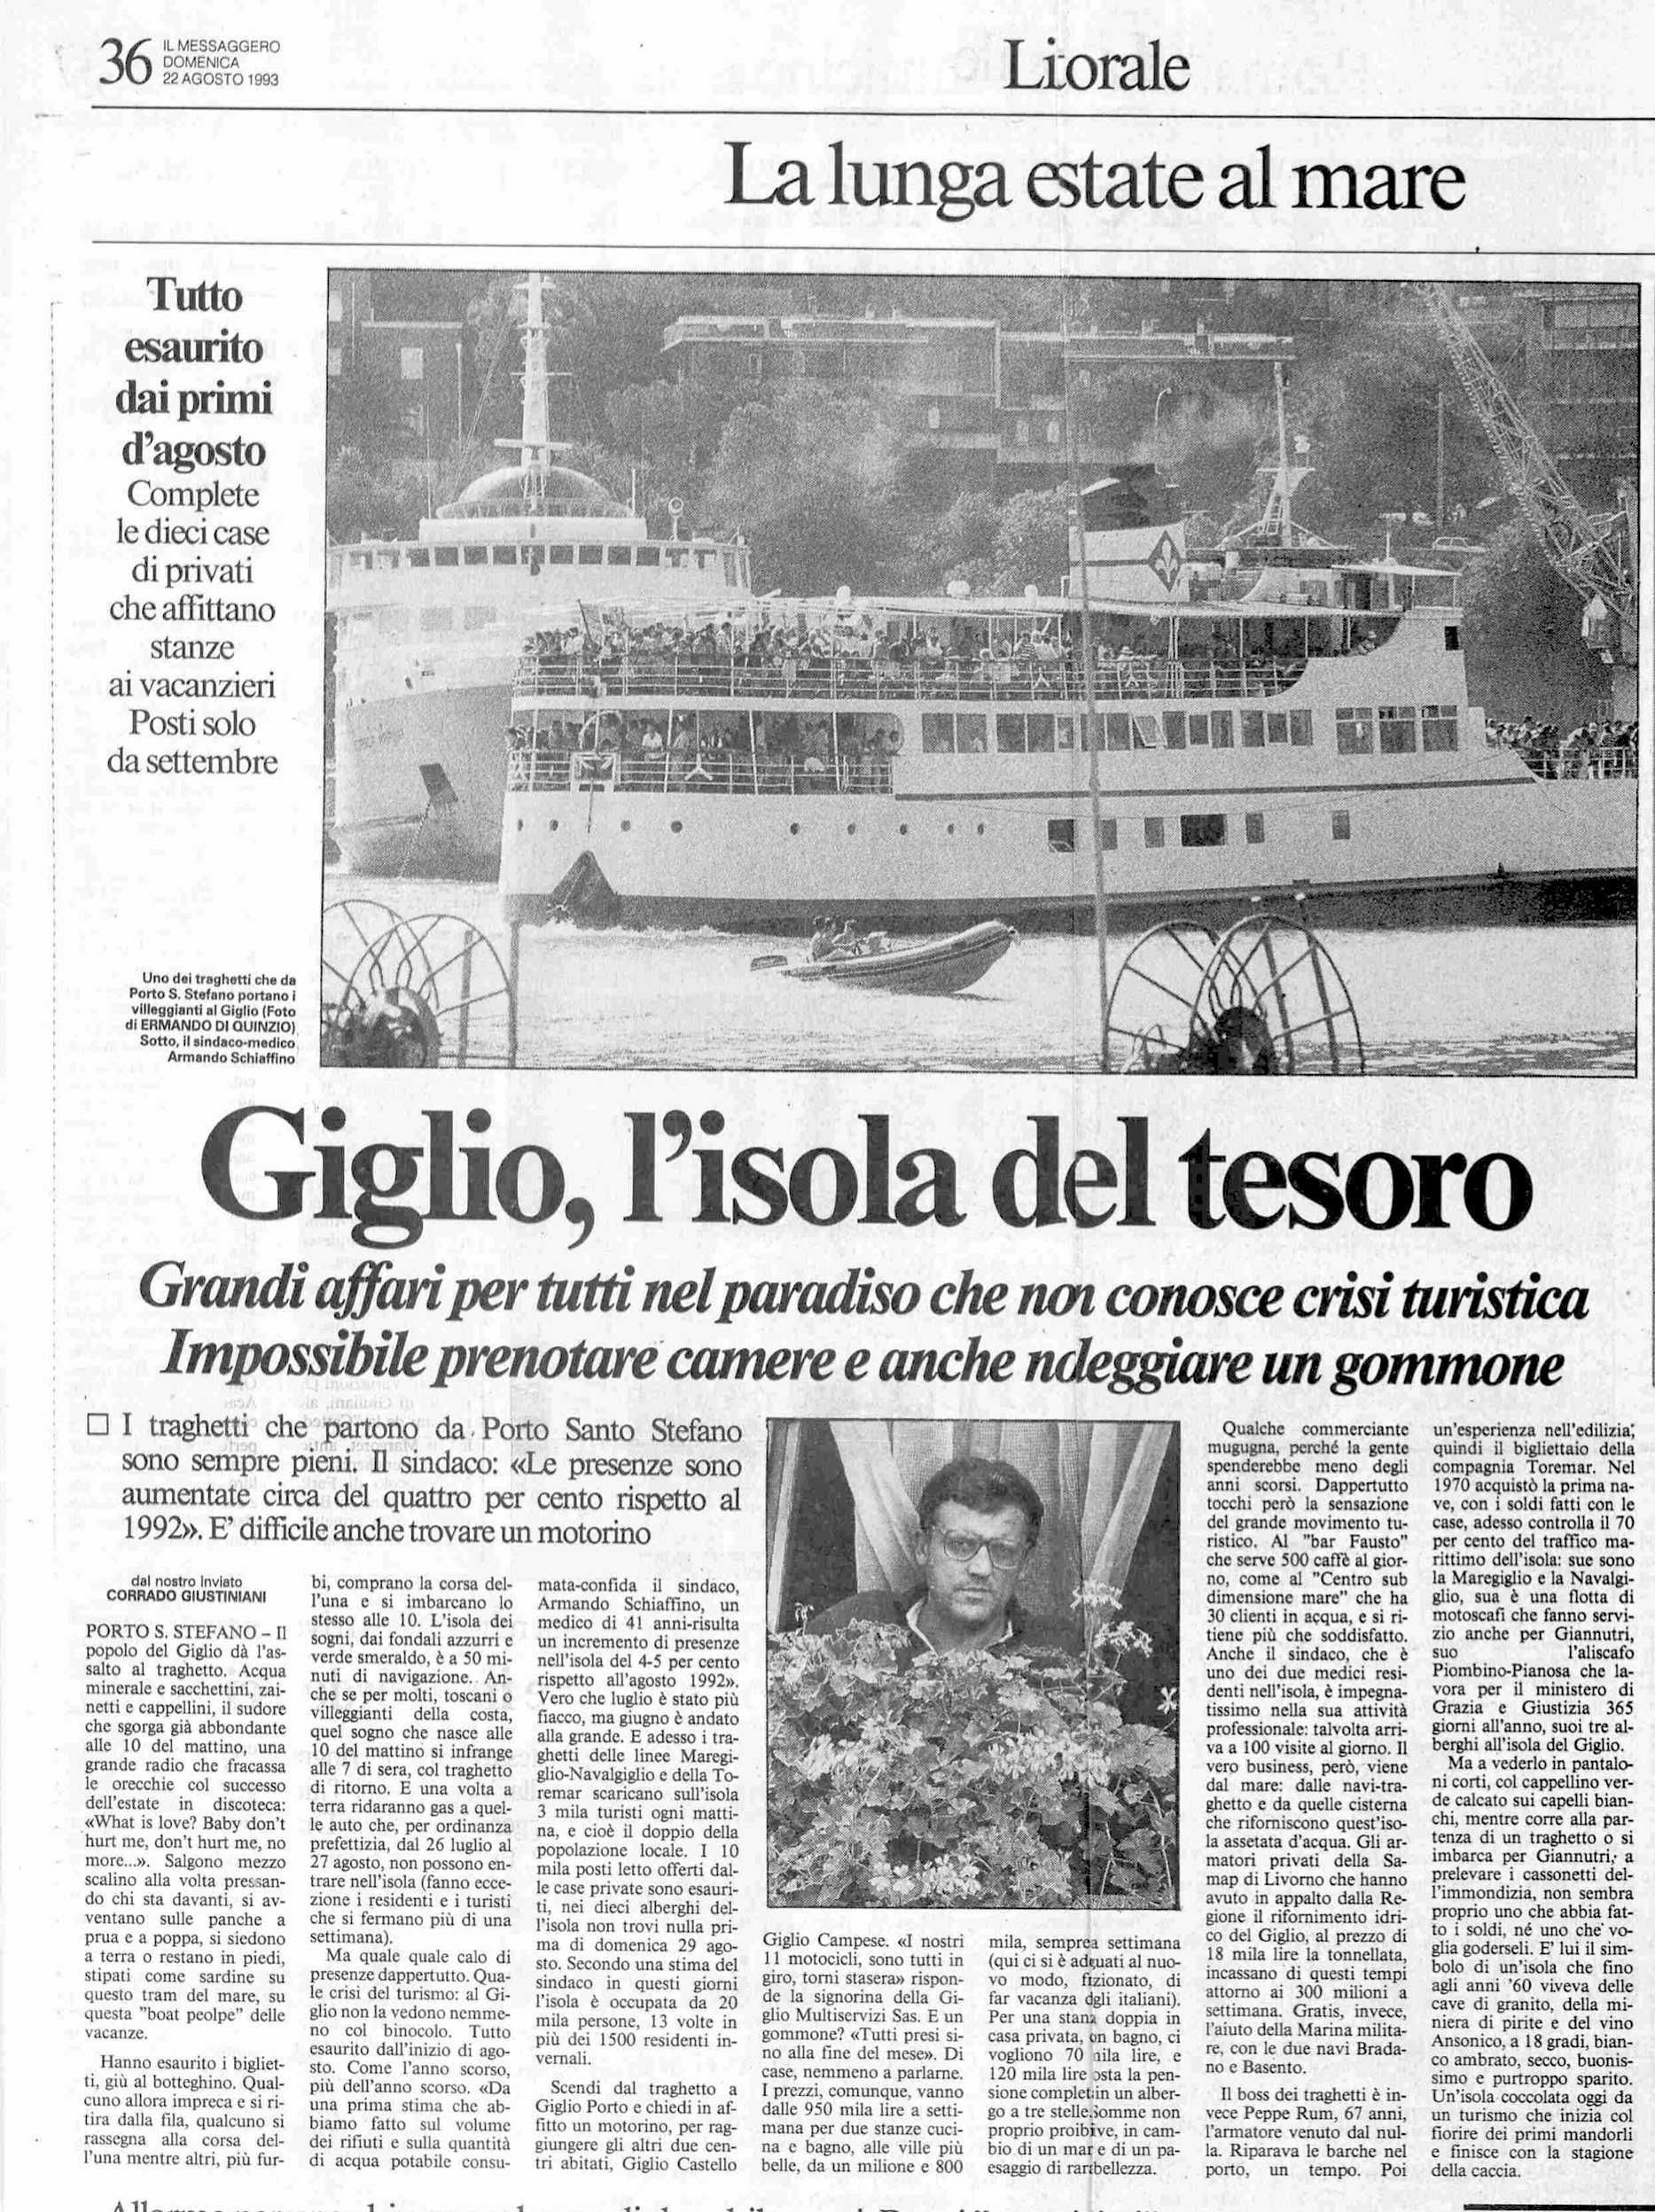 isola del tesoro articolo messaggero 1993 isola del giglio giglionews